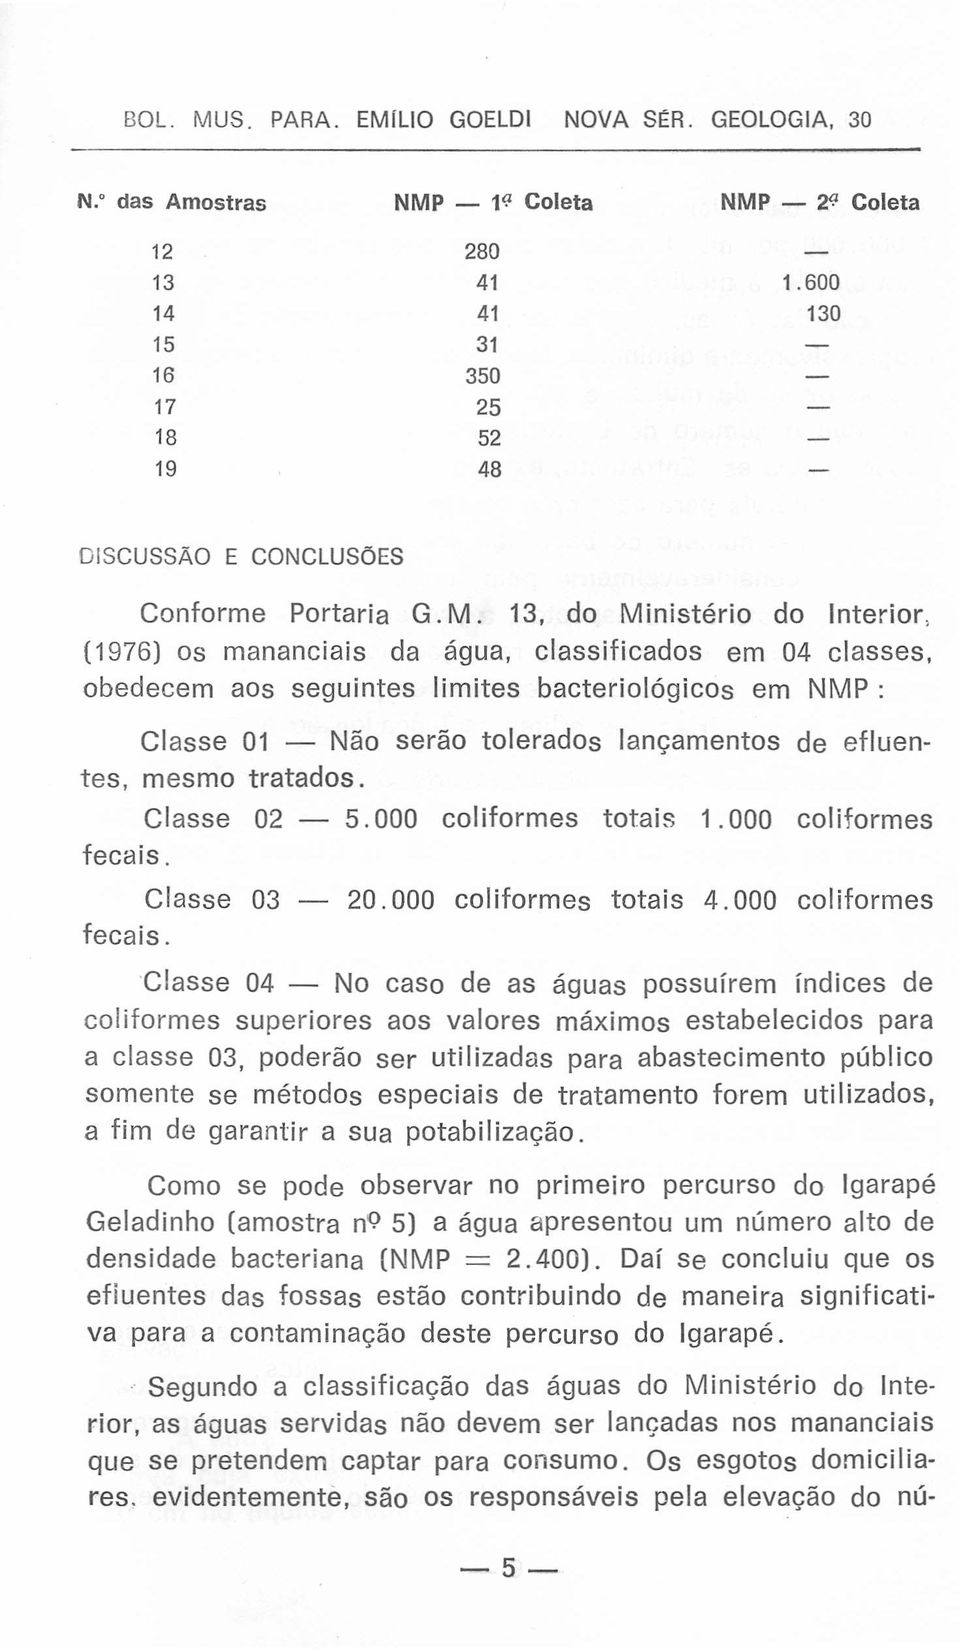 13, do Ministério do Interior, (1976) os mananciais da água, classificados em 04 classes, obedecem aos seguintes limites bacteriológicos em NMP: Classe 01 - Não serão tolerados lançamentos de